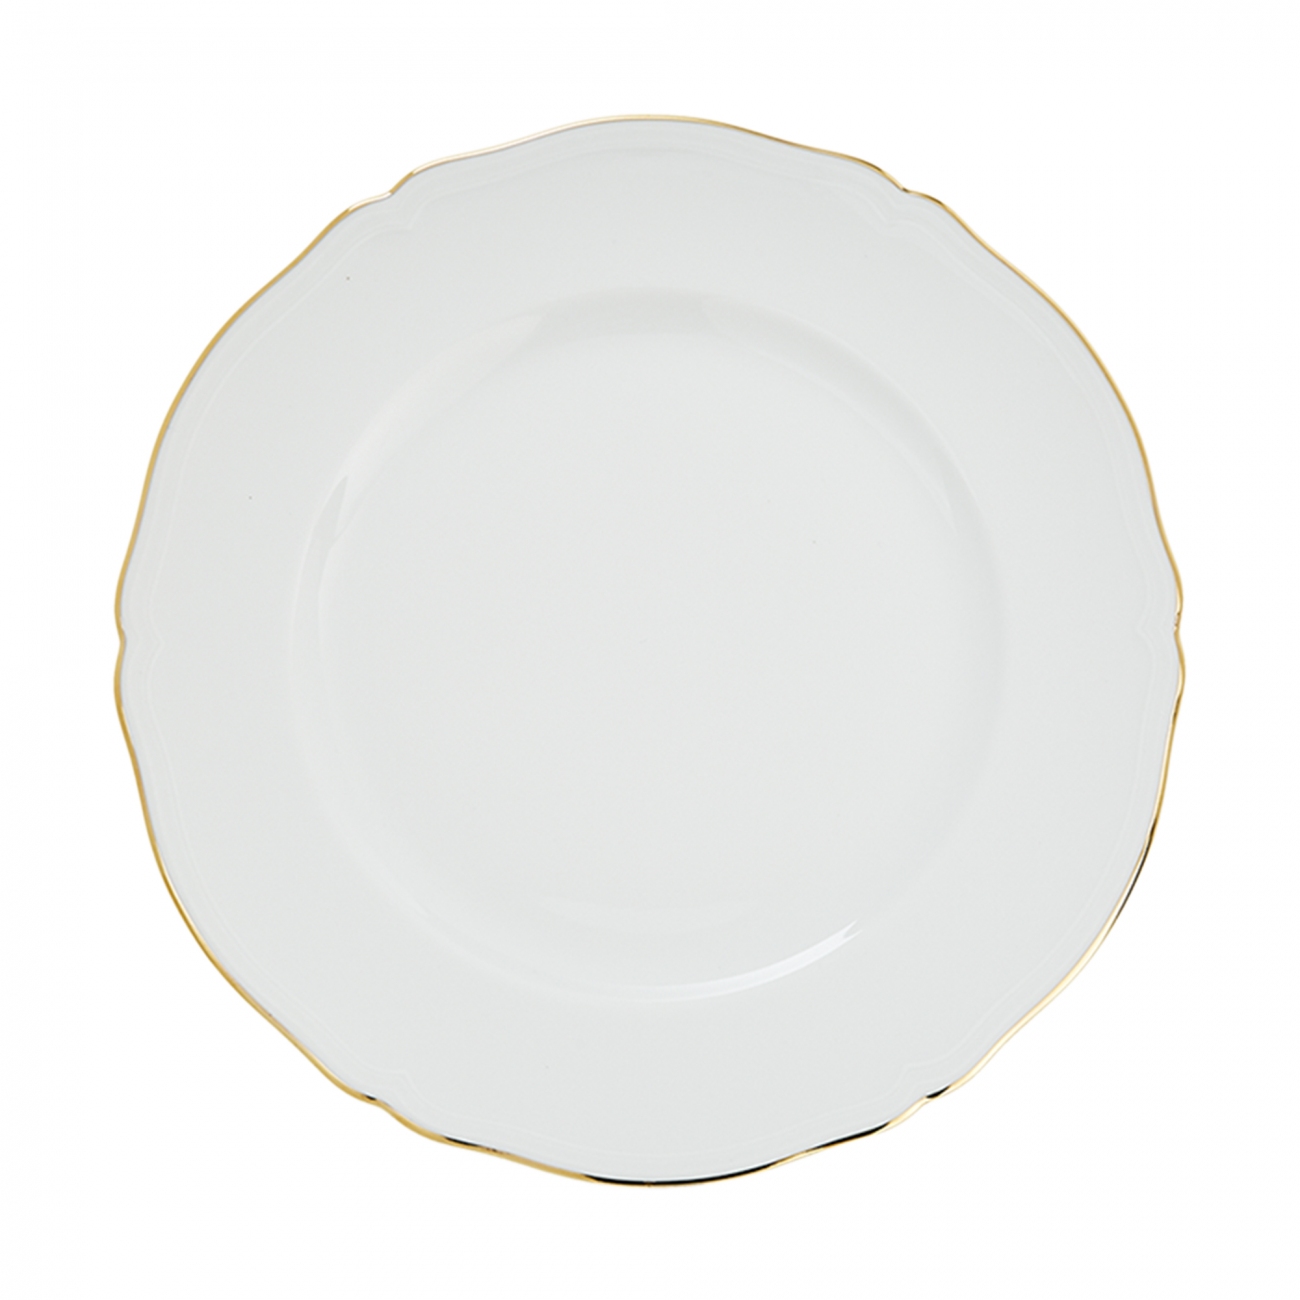 Ginori 1735 Corona Dinner plate Set of 6